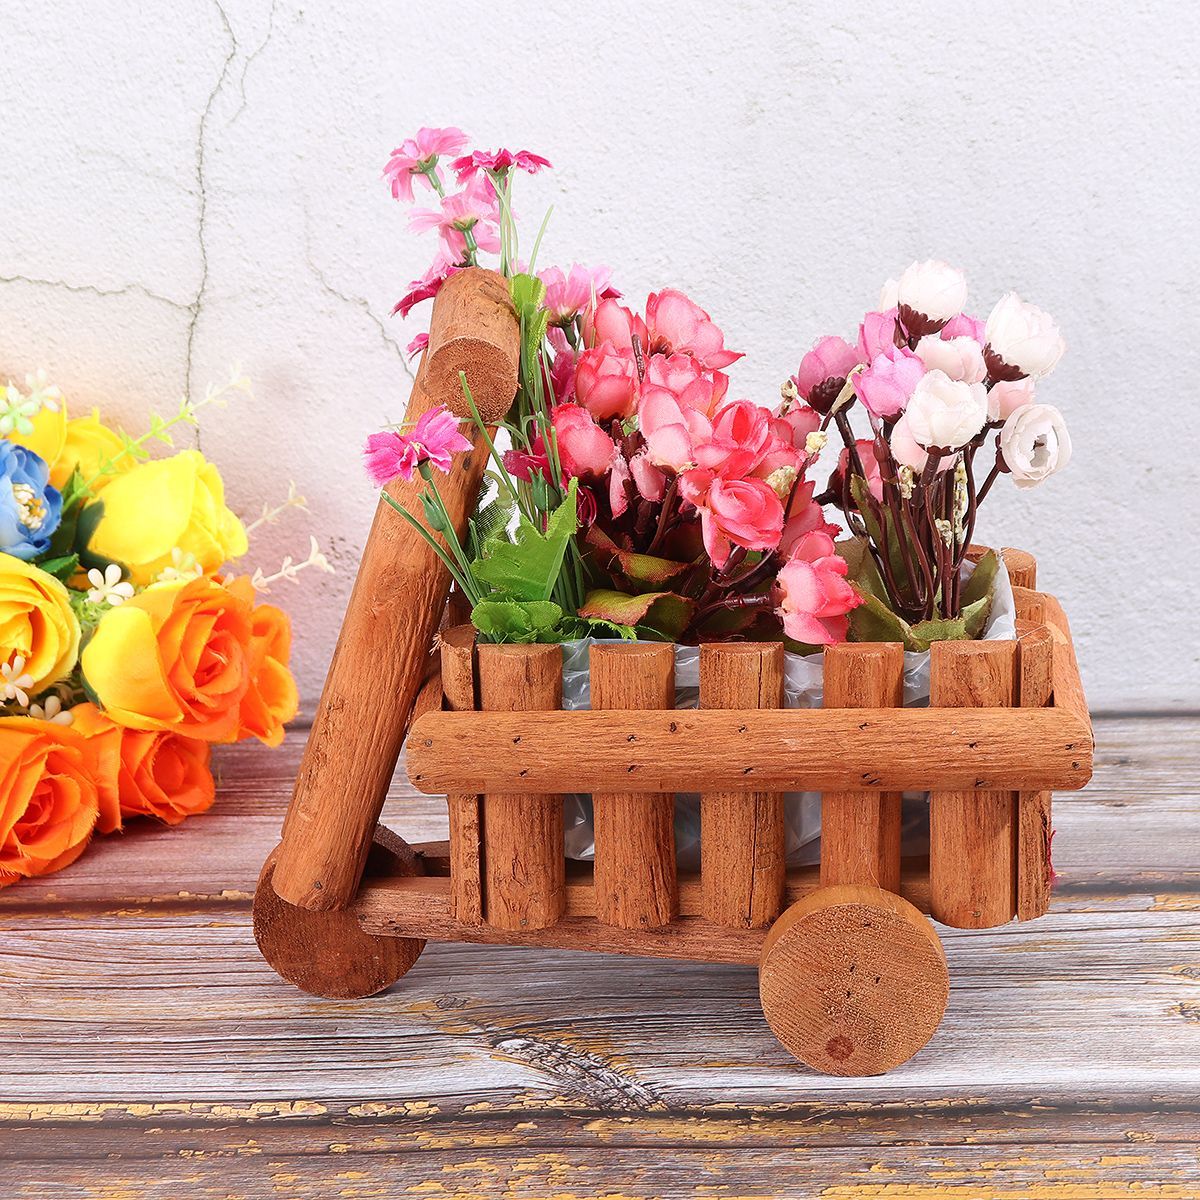 Small-Cart-Flower-Pot-Wooden-Wheelbarrow-Planter-Succulent-Container-Ornament-1727273